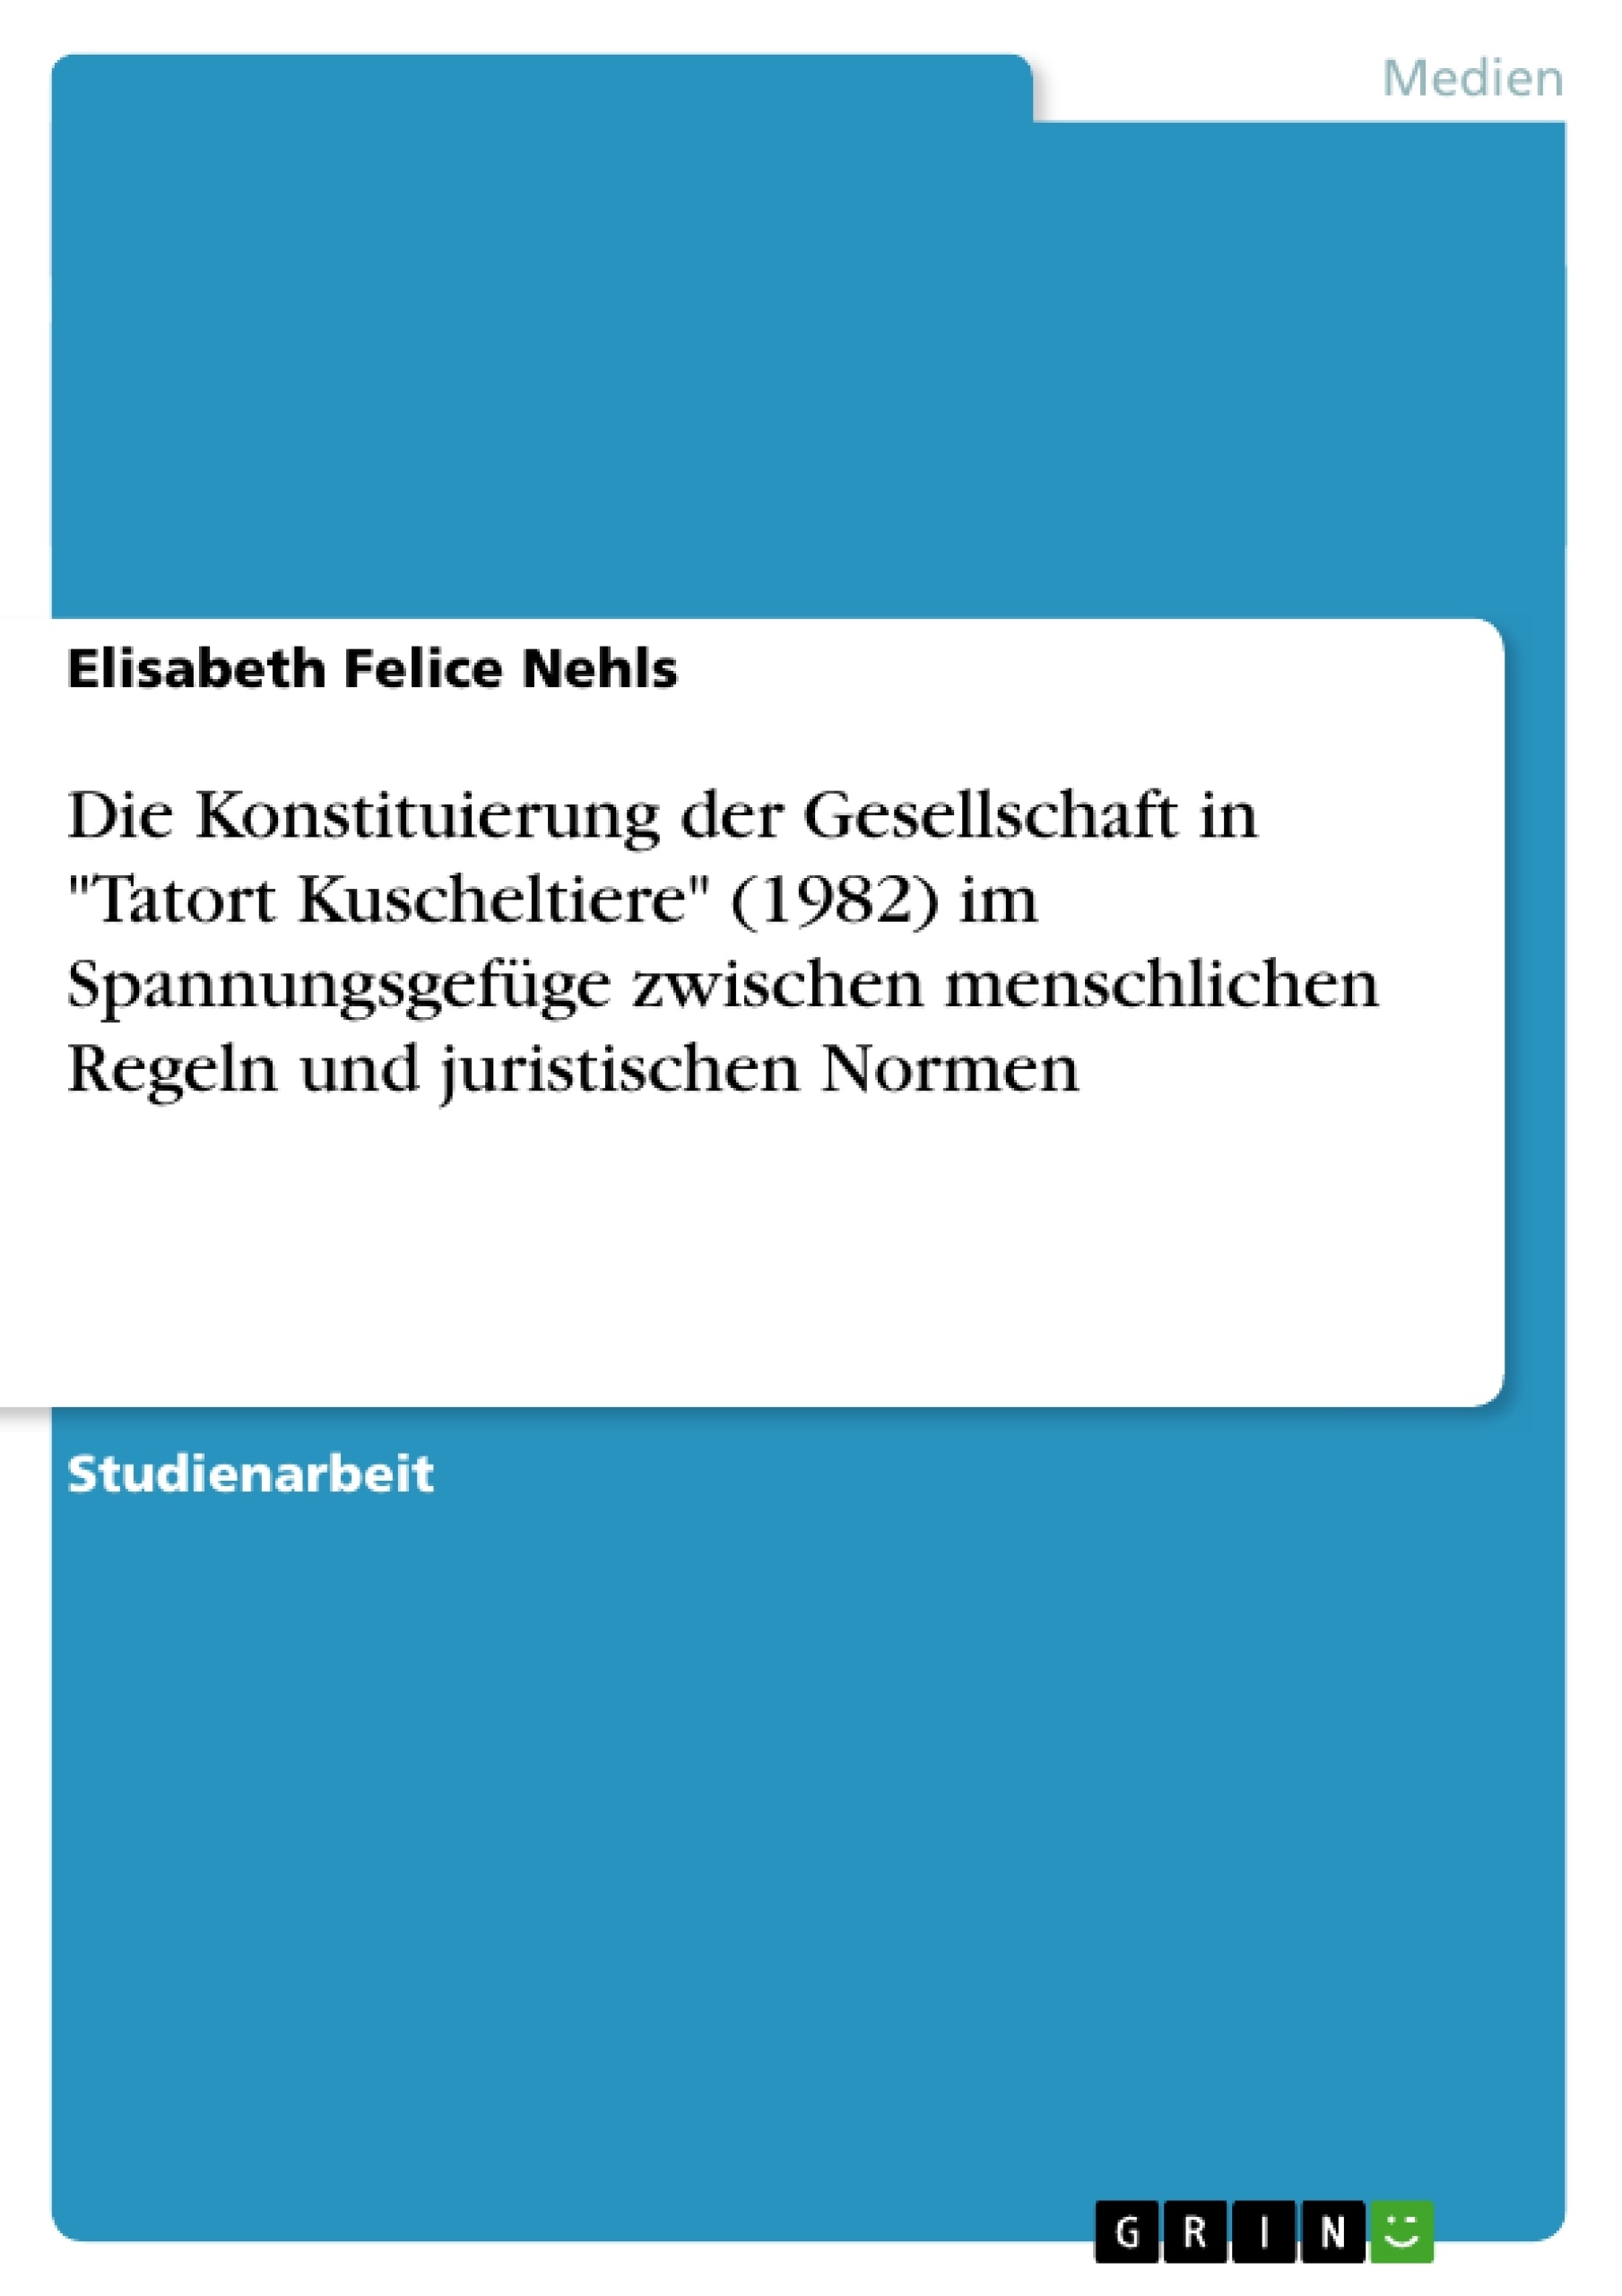 Titre: Die Konstituierung der Gesellschaft in "Tatort Kuscheltiere" (1982) im Spannungsgefüge zwischen menschlichen Regeln und juristischen Normen  